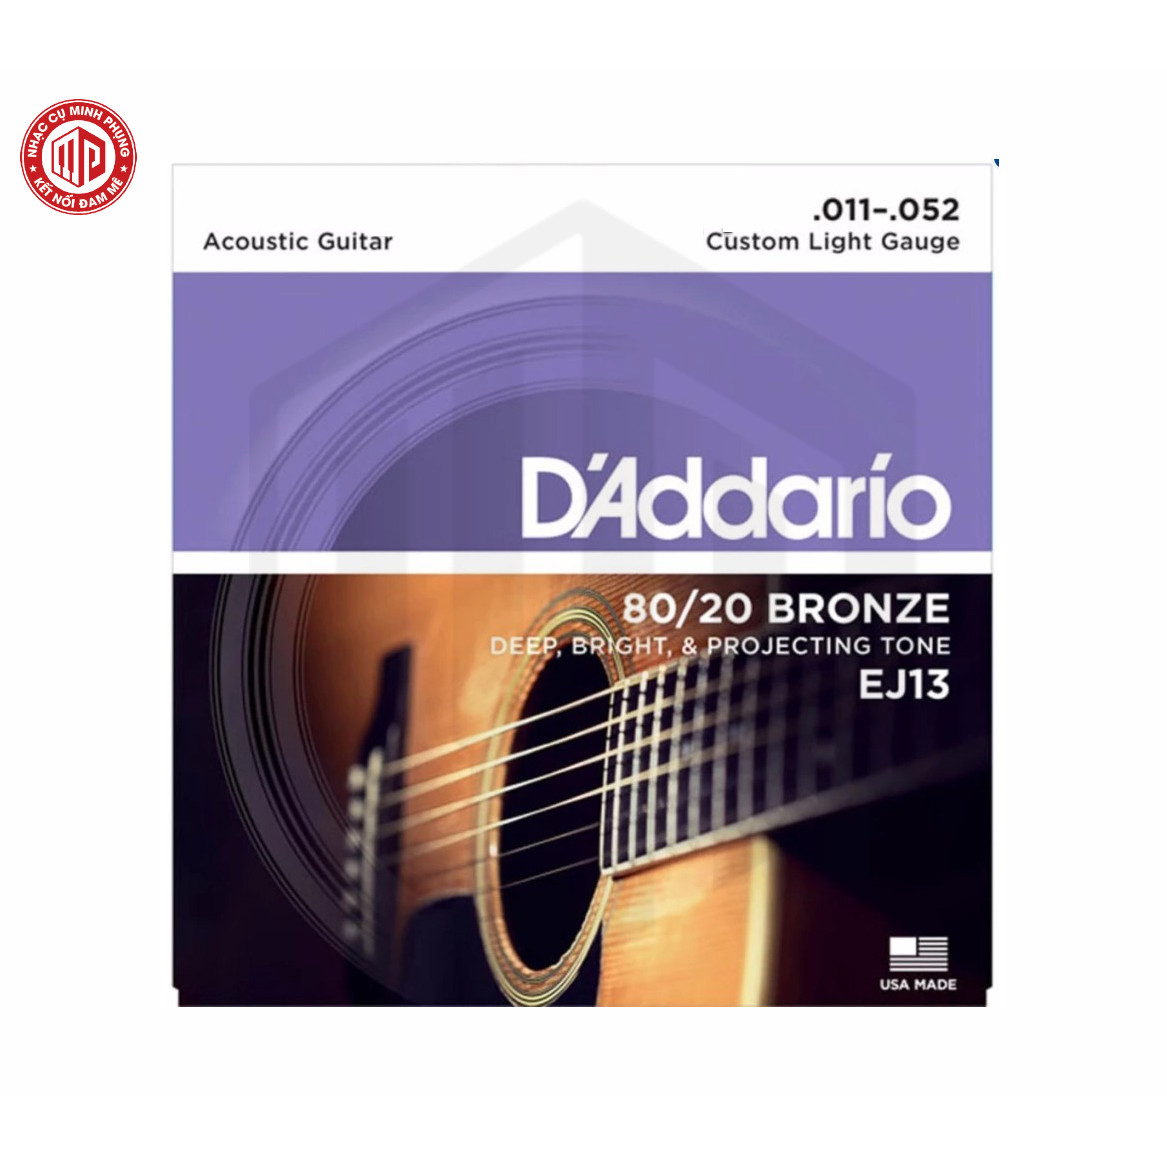 Bộ dây đàn Guitar Acoustic/ Acoustic Guitar Strings - D'Addario EJ13 - 80/20 Bronze - Deep, Bright &amp; Projecting Tone - Custom Light Gauge .011-.052 (Custom Light 11-52) - Hàng chính hãng